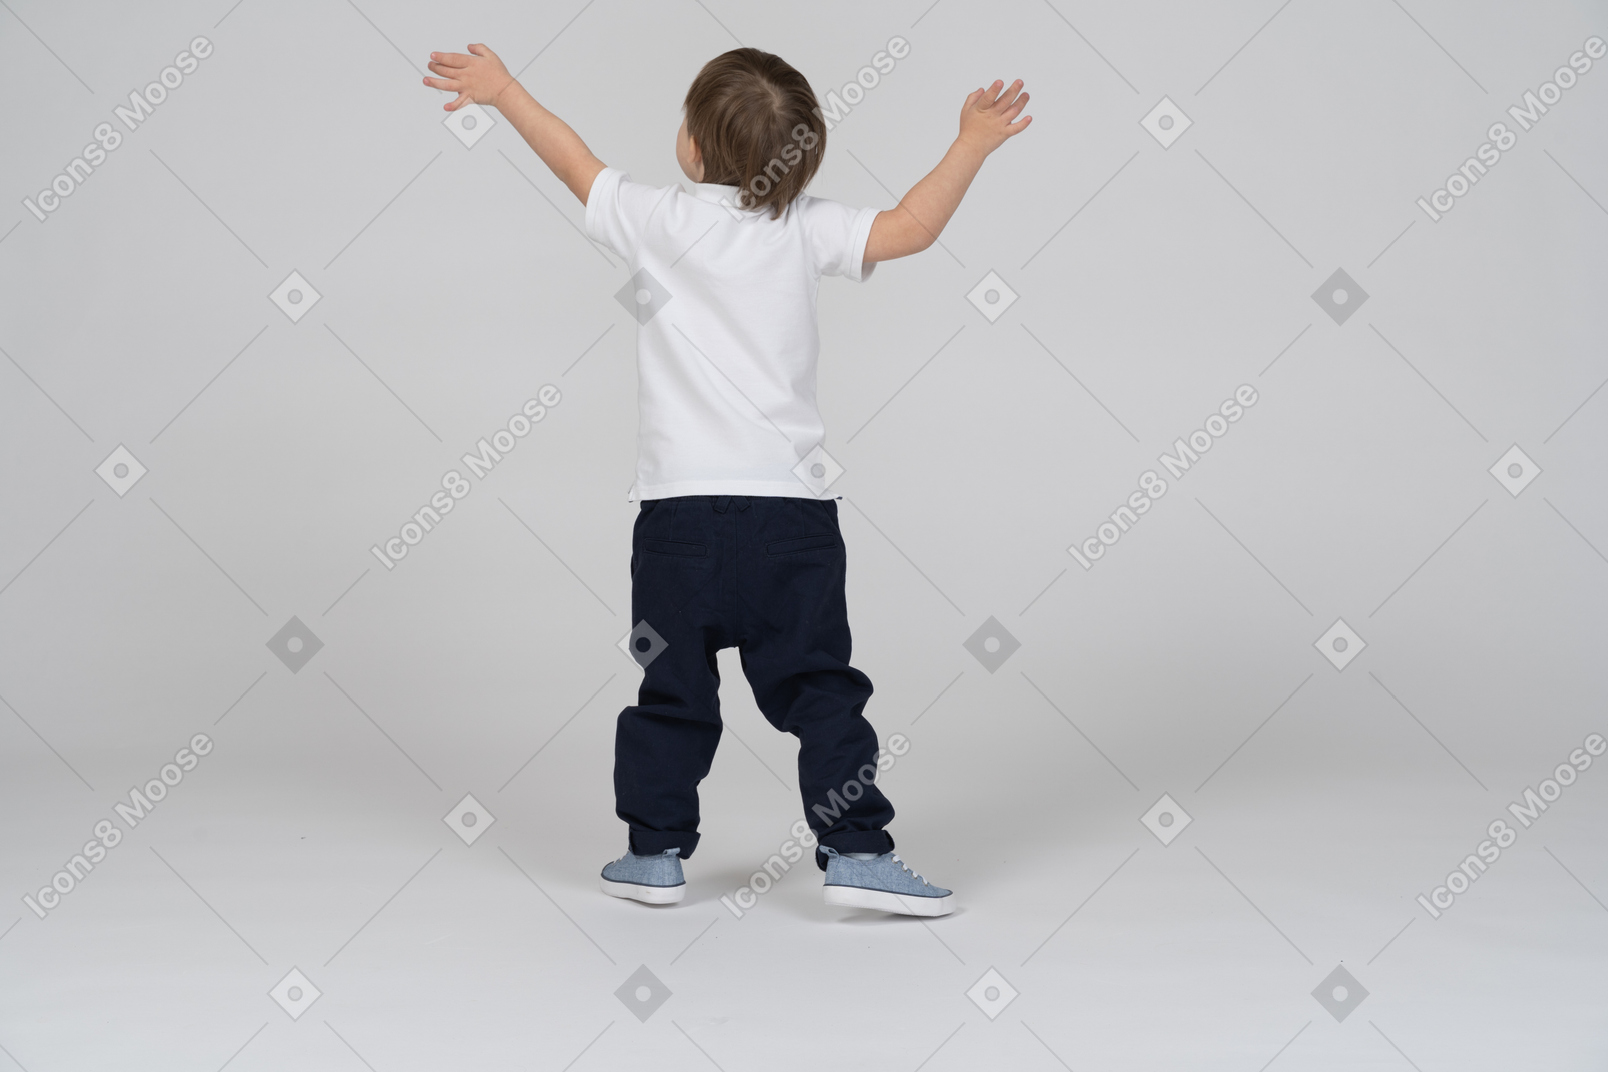 一个举起双臂站立的小男孩的背影